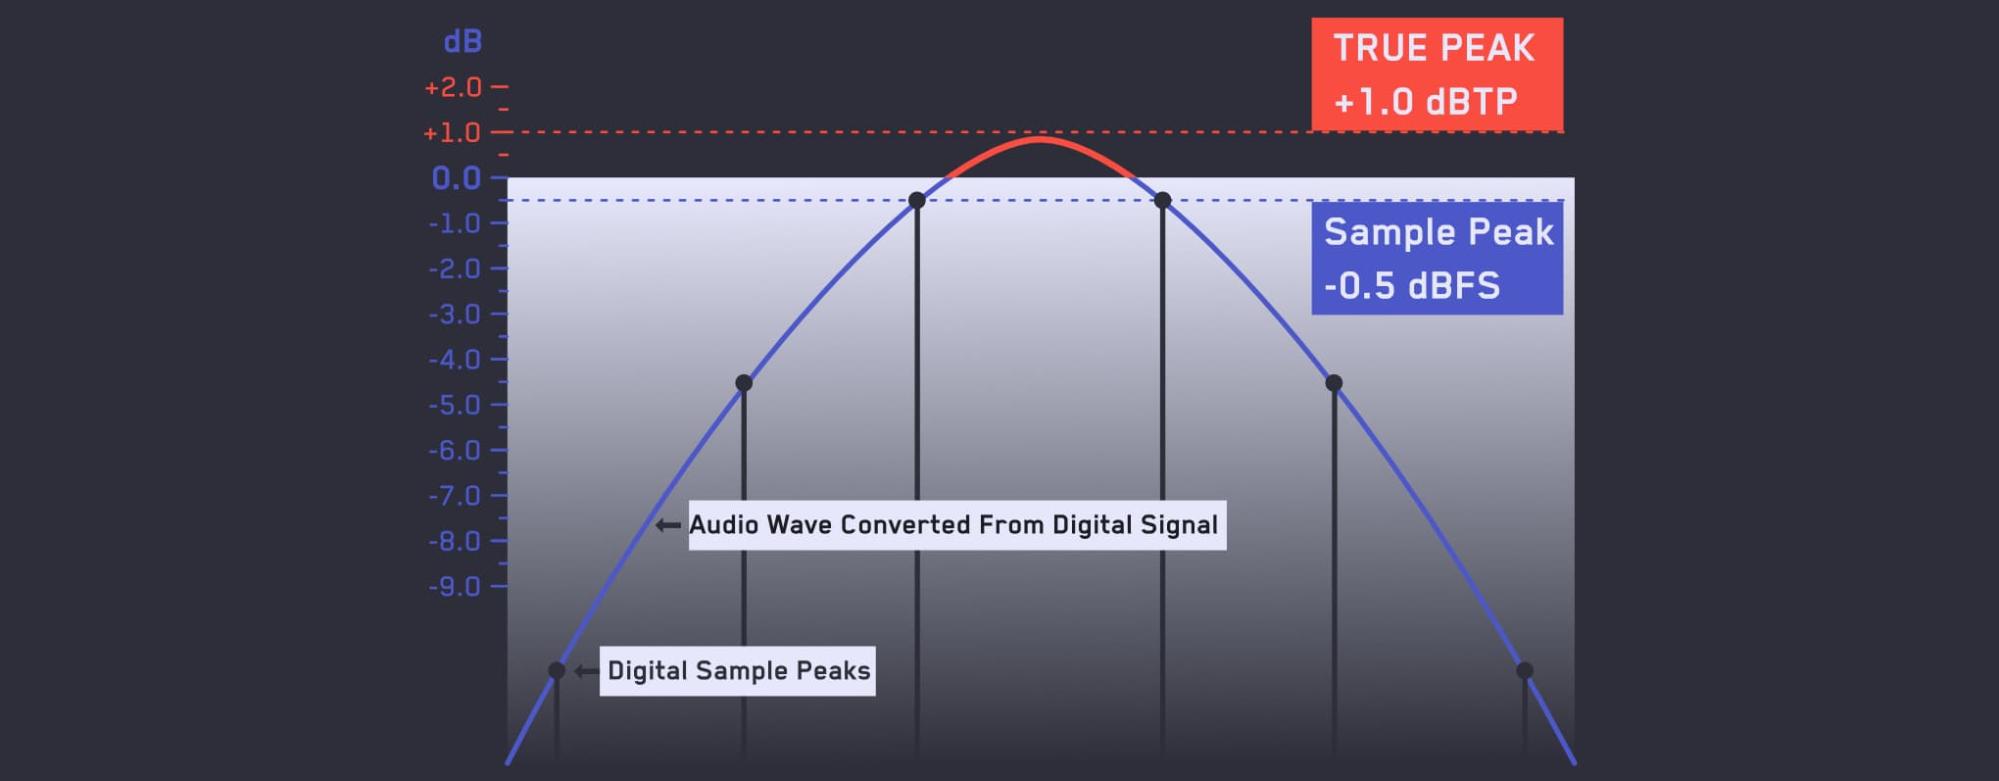 True Peak / Inter-sample peak infographic